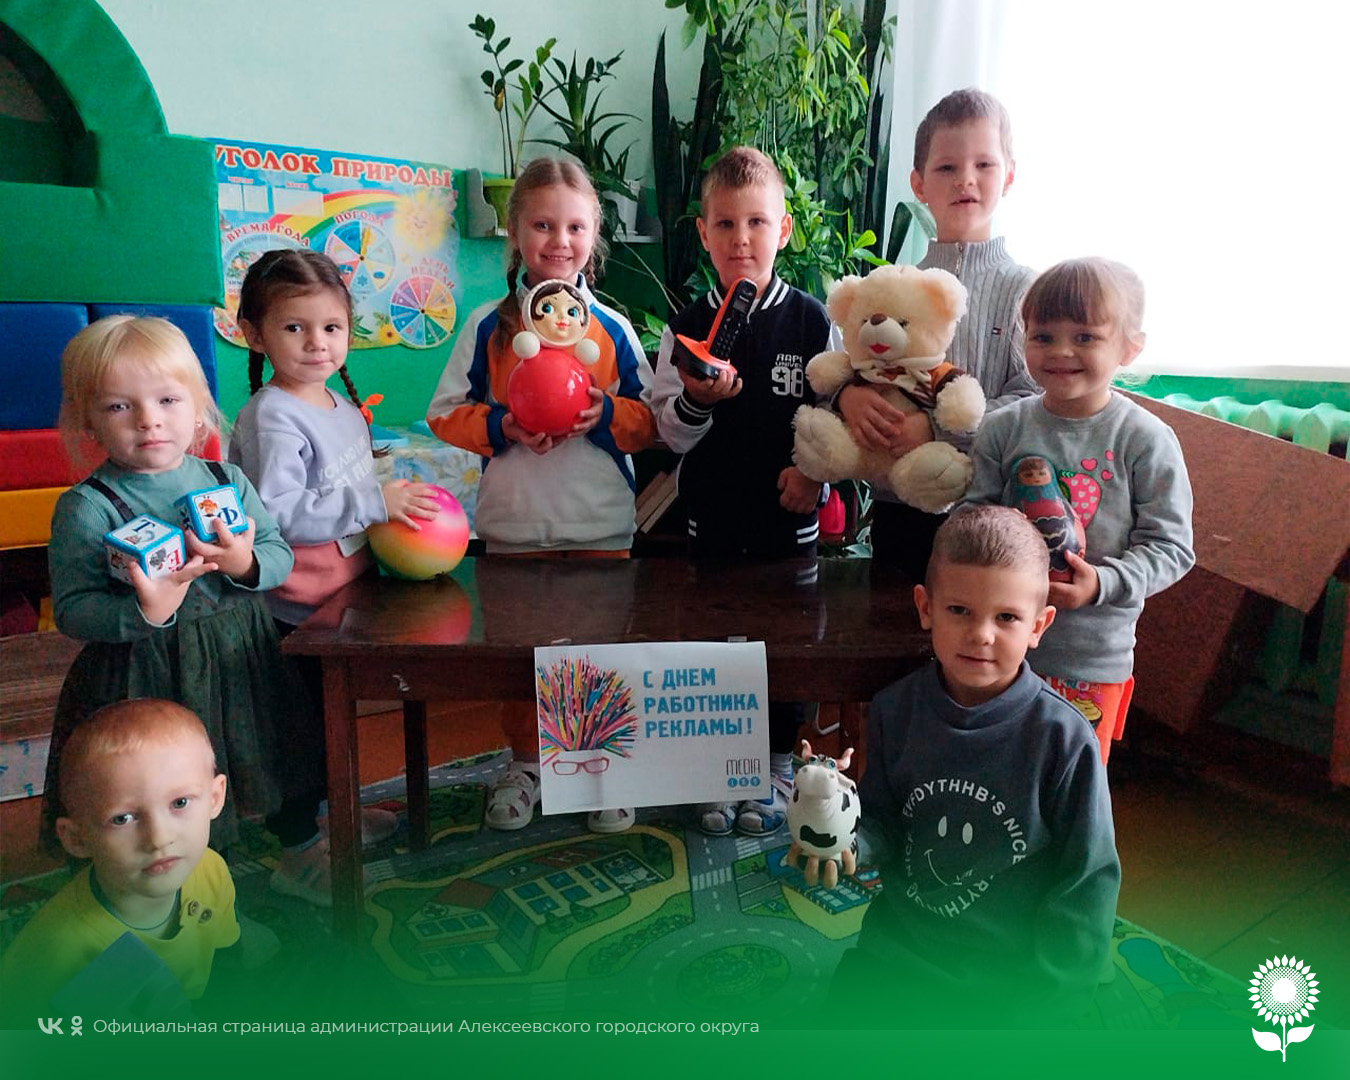 В детских садах Алексеевского городского округа прошёл День работников рекламы.